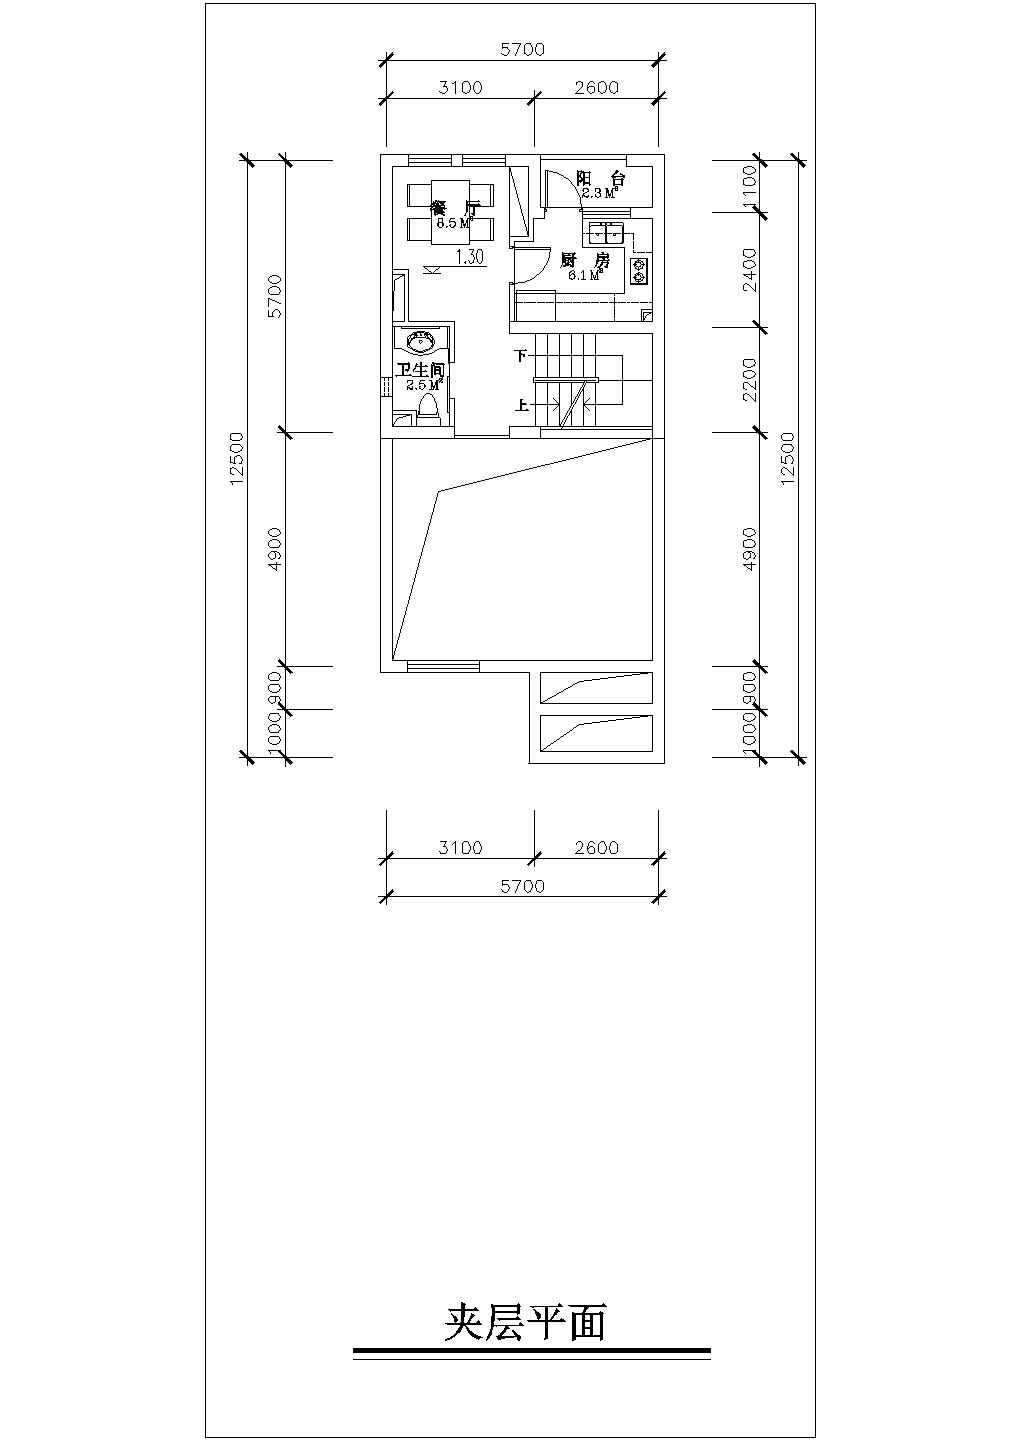 带夹层联排别墅户型建筑设计施工图